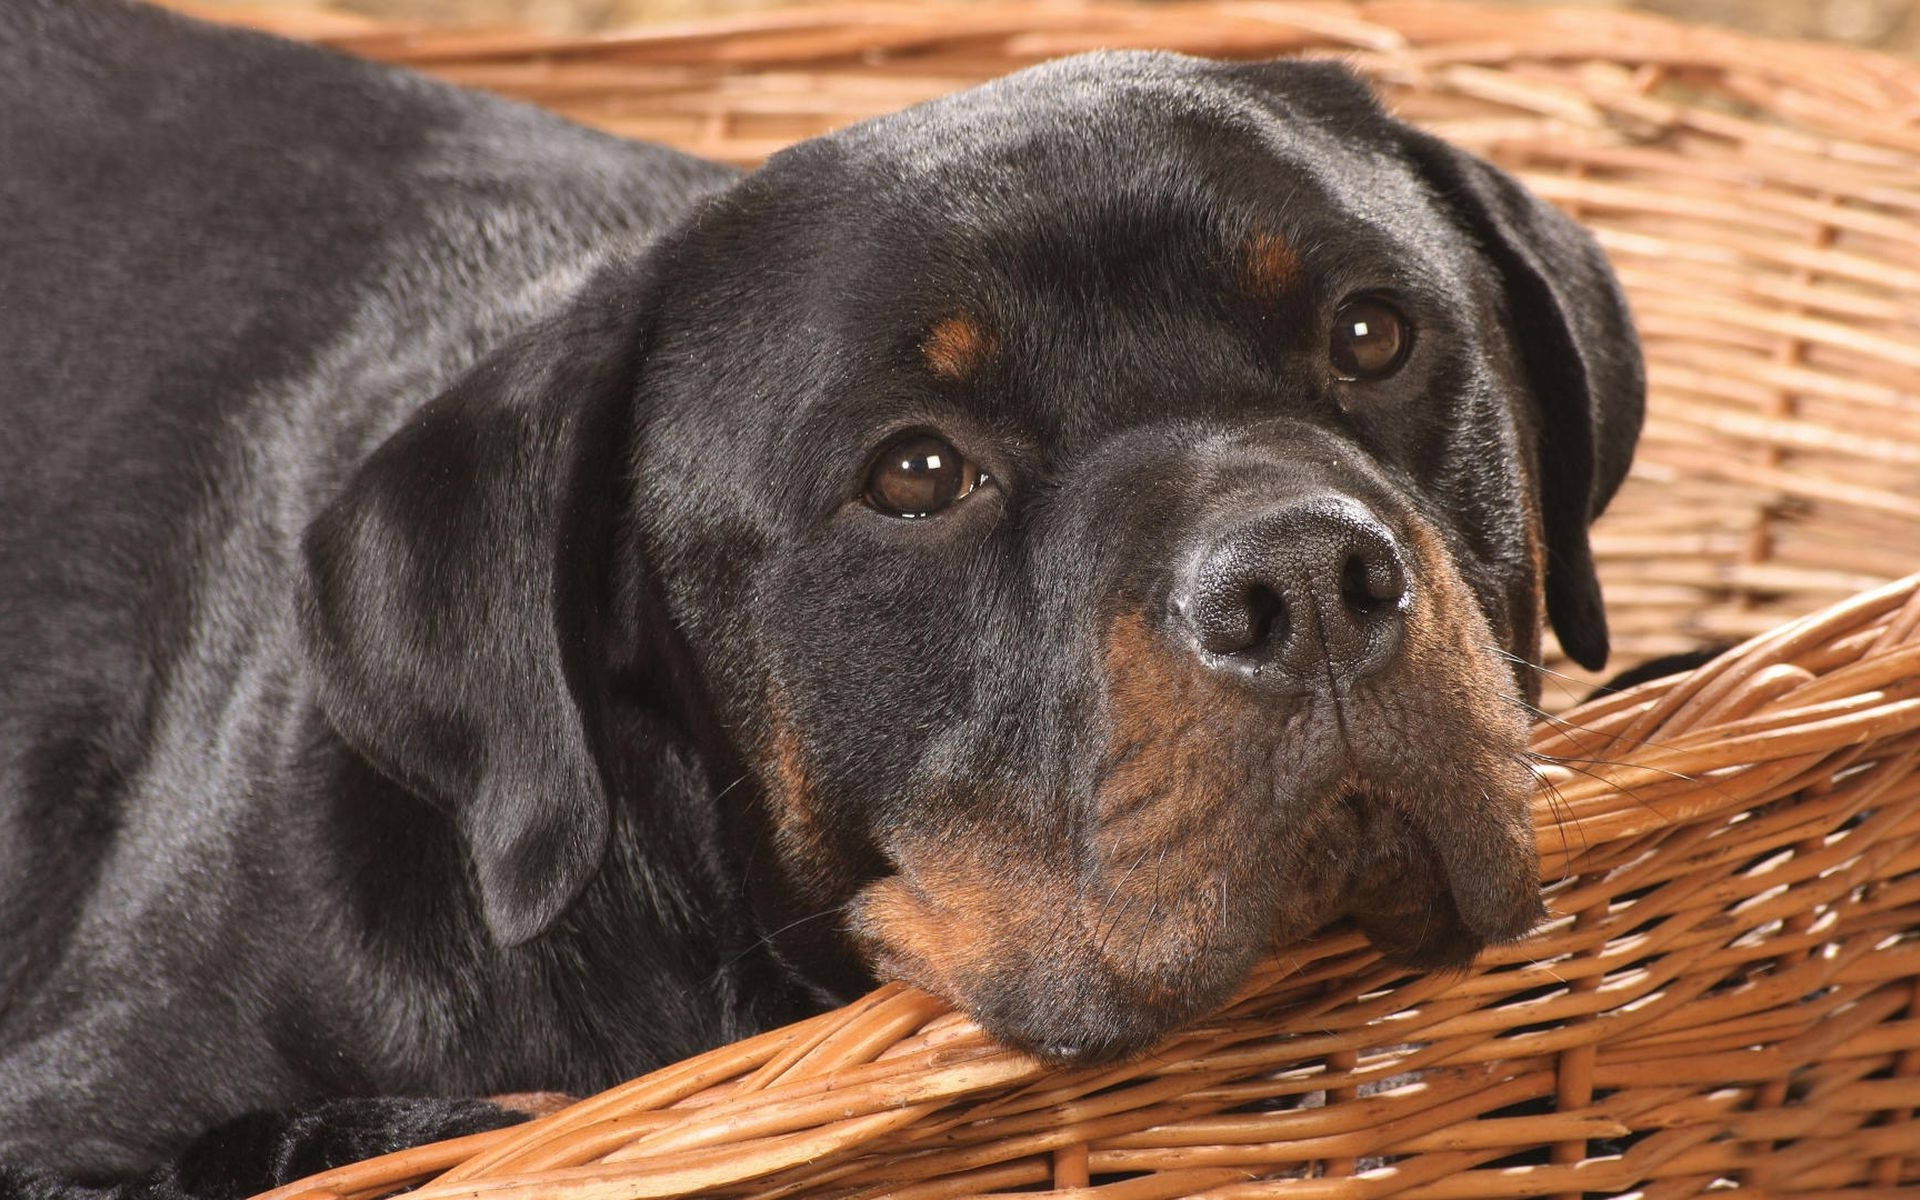 Rottweiler Dog In A Basket